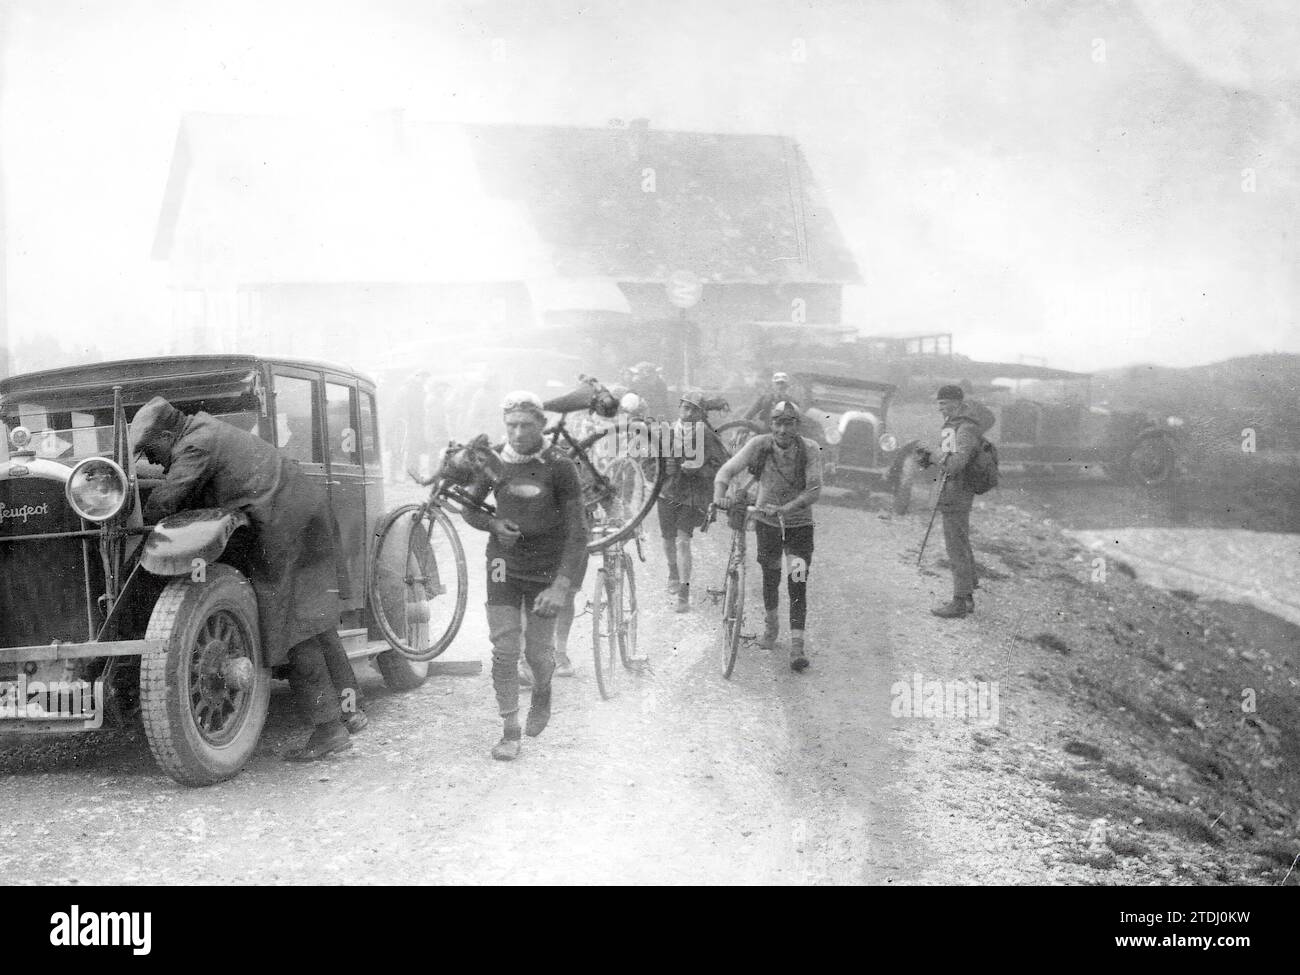 Tour de France, 07/09/1927. Un gruppo di corridori arriva al passo Galibier a piedi, trascinando le loro biciclette attraverso la nebbia. Crediti: Album / Archivo ABC Foto Stock